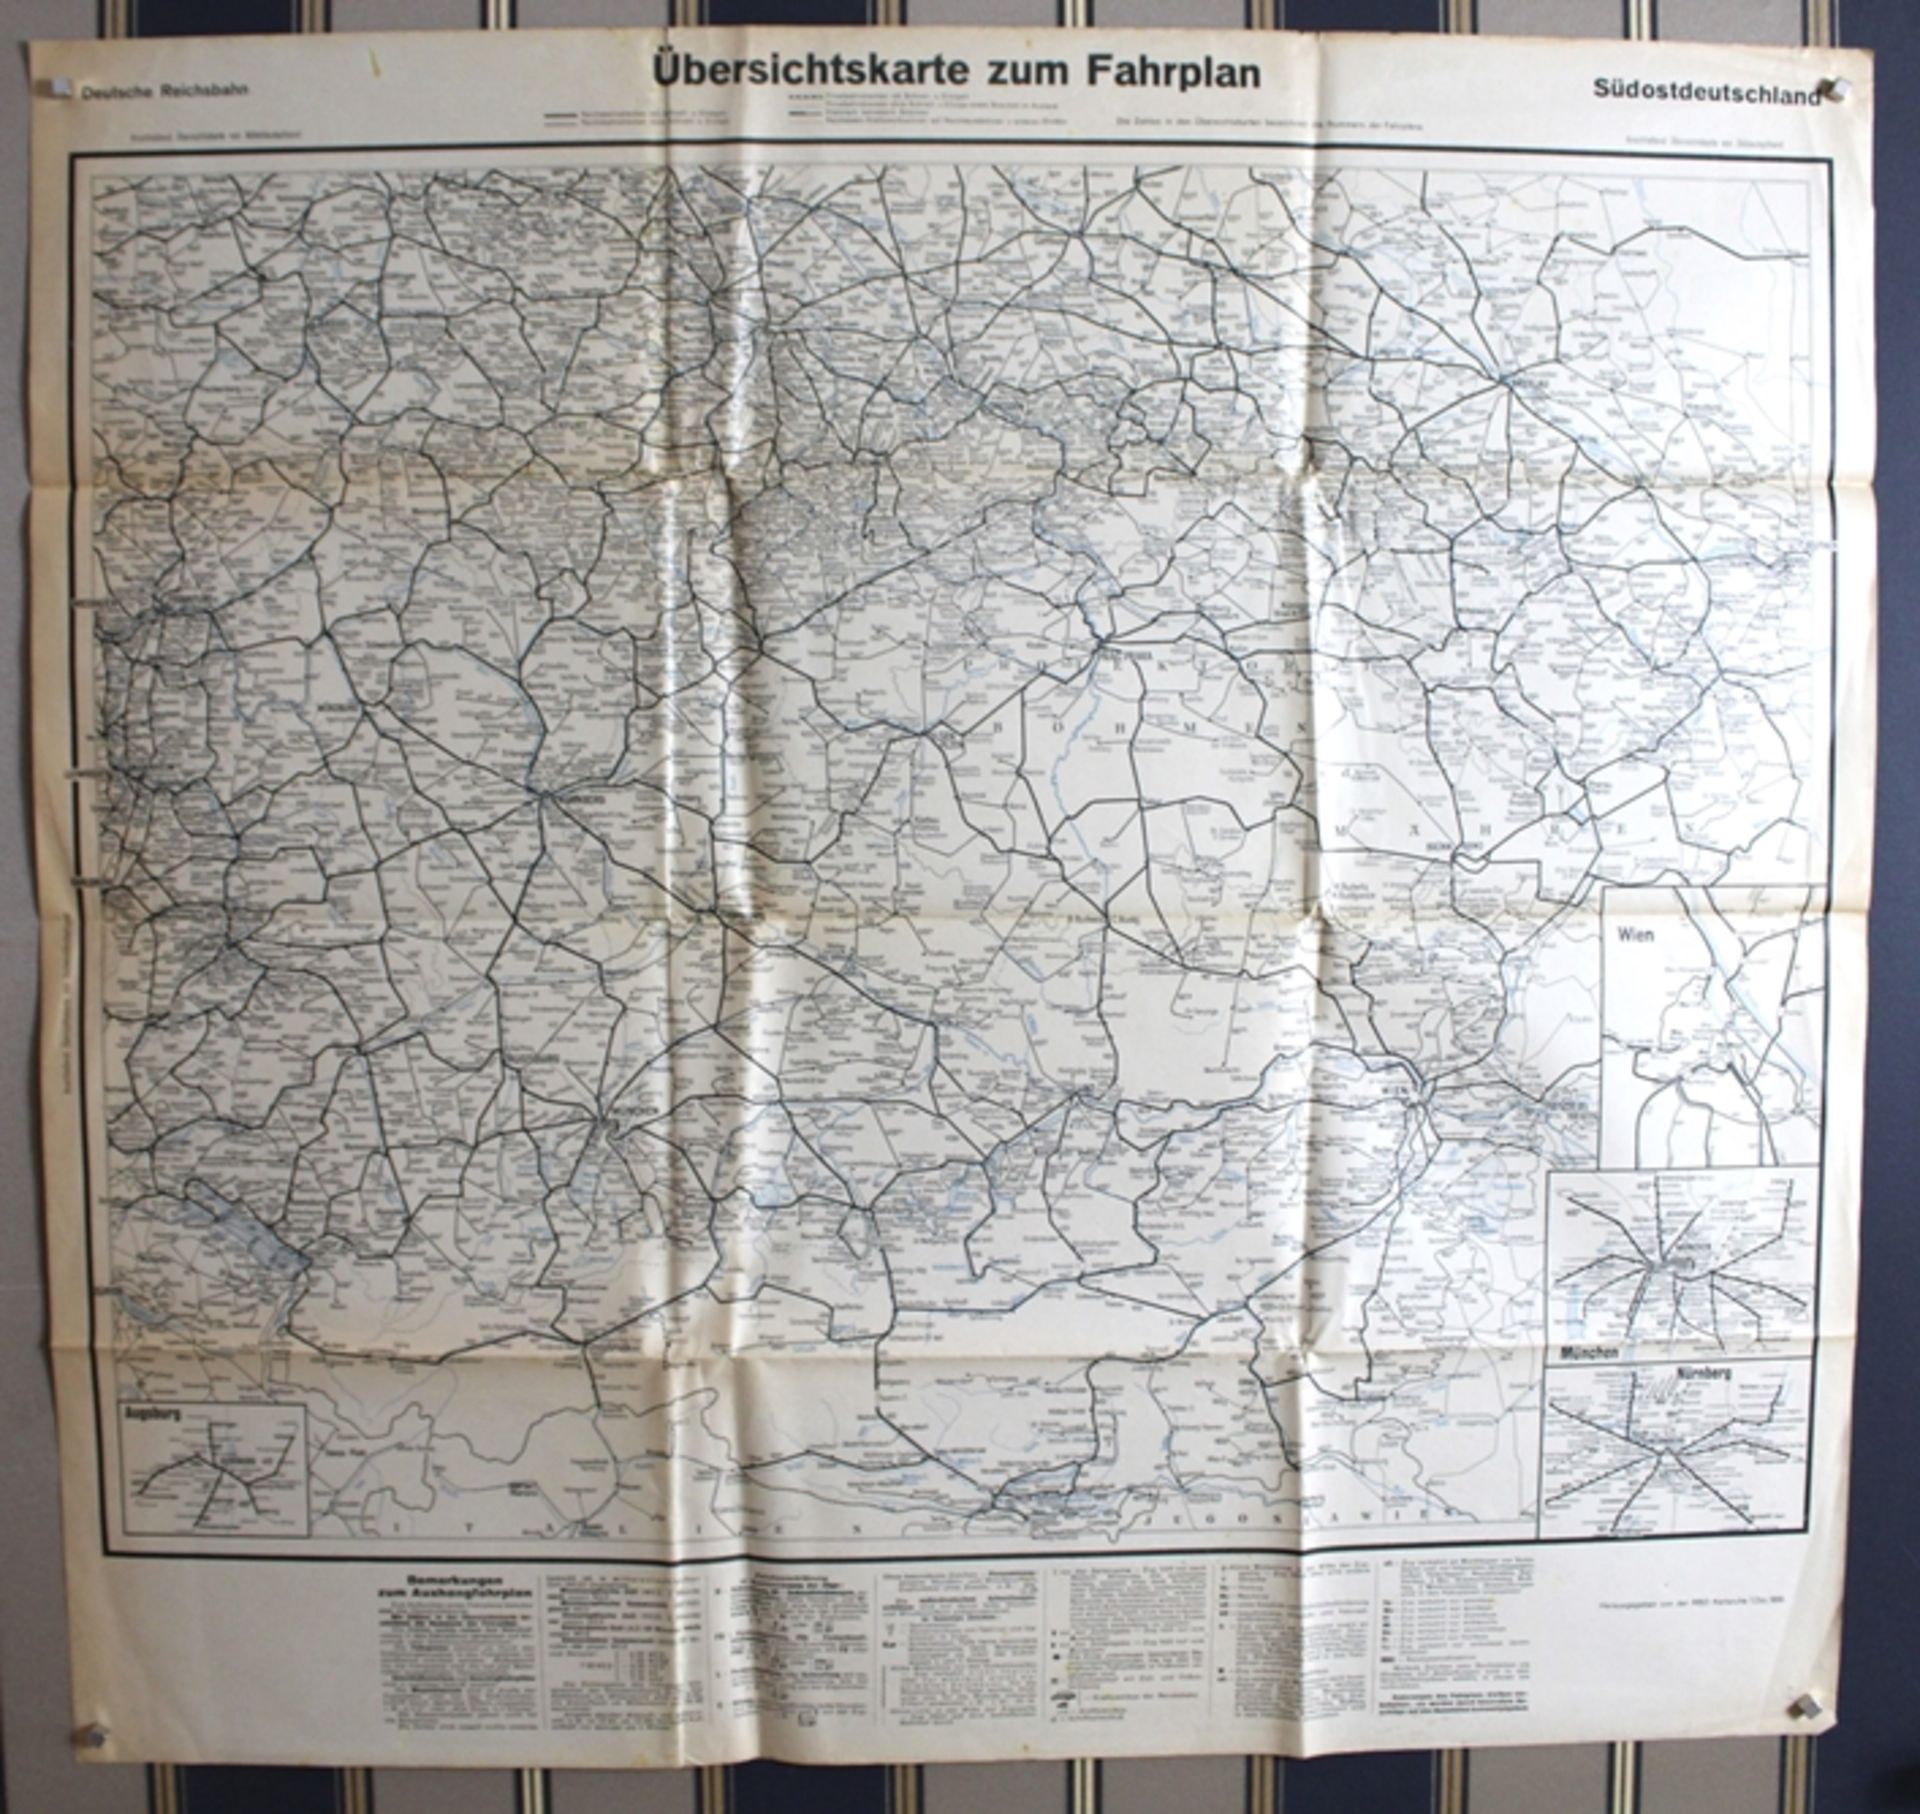 Übersichtskarte zum Fahrplan Südostdeutschland Deutsche Reichsbahn, herausgegeben von der RBD Karls